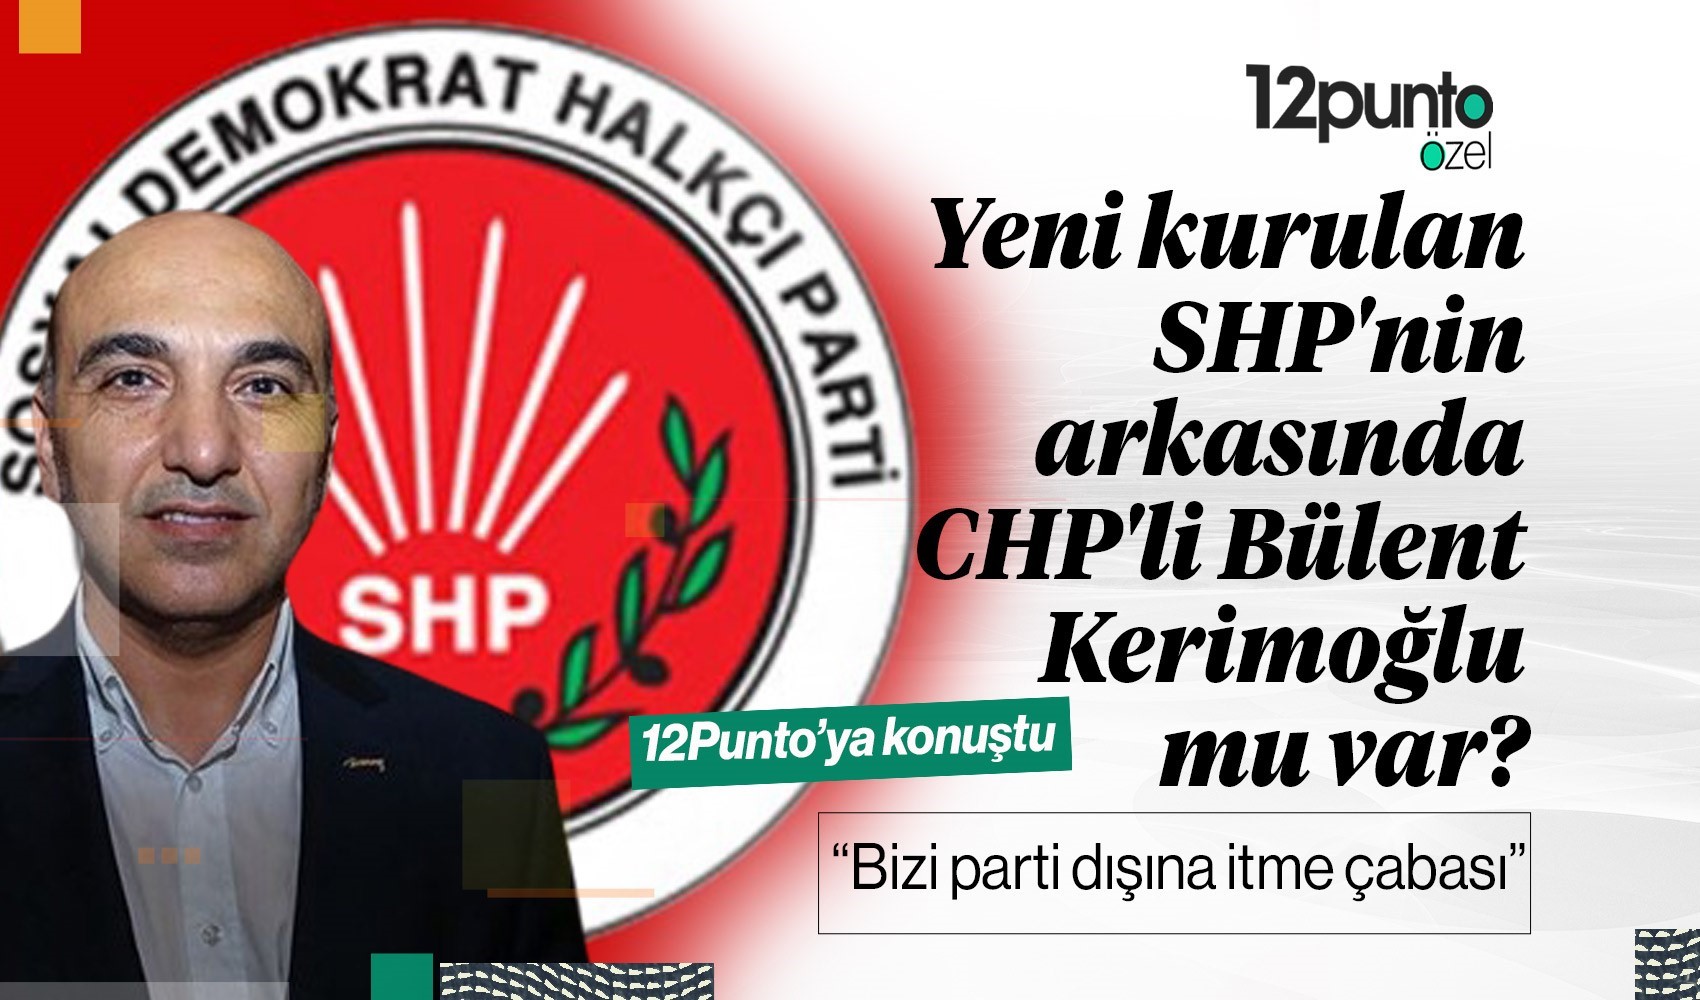 Yeni kurulan SHP’nin arkasında eski Bakırköy Belediye Başkanı CHP’li Bülent Kerimoğlu mu var?